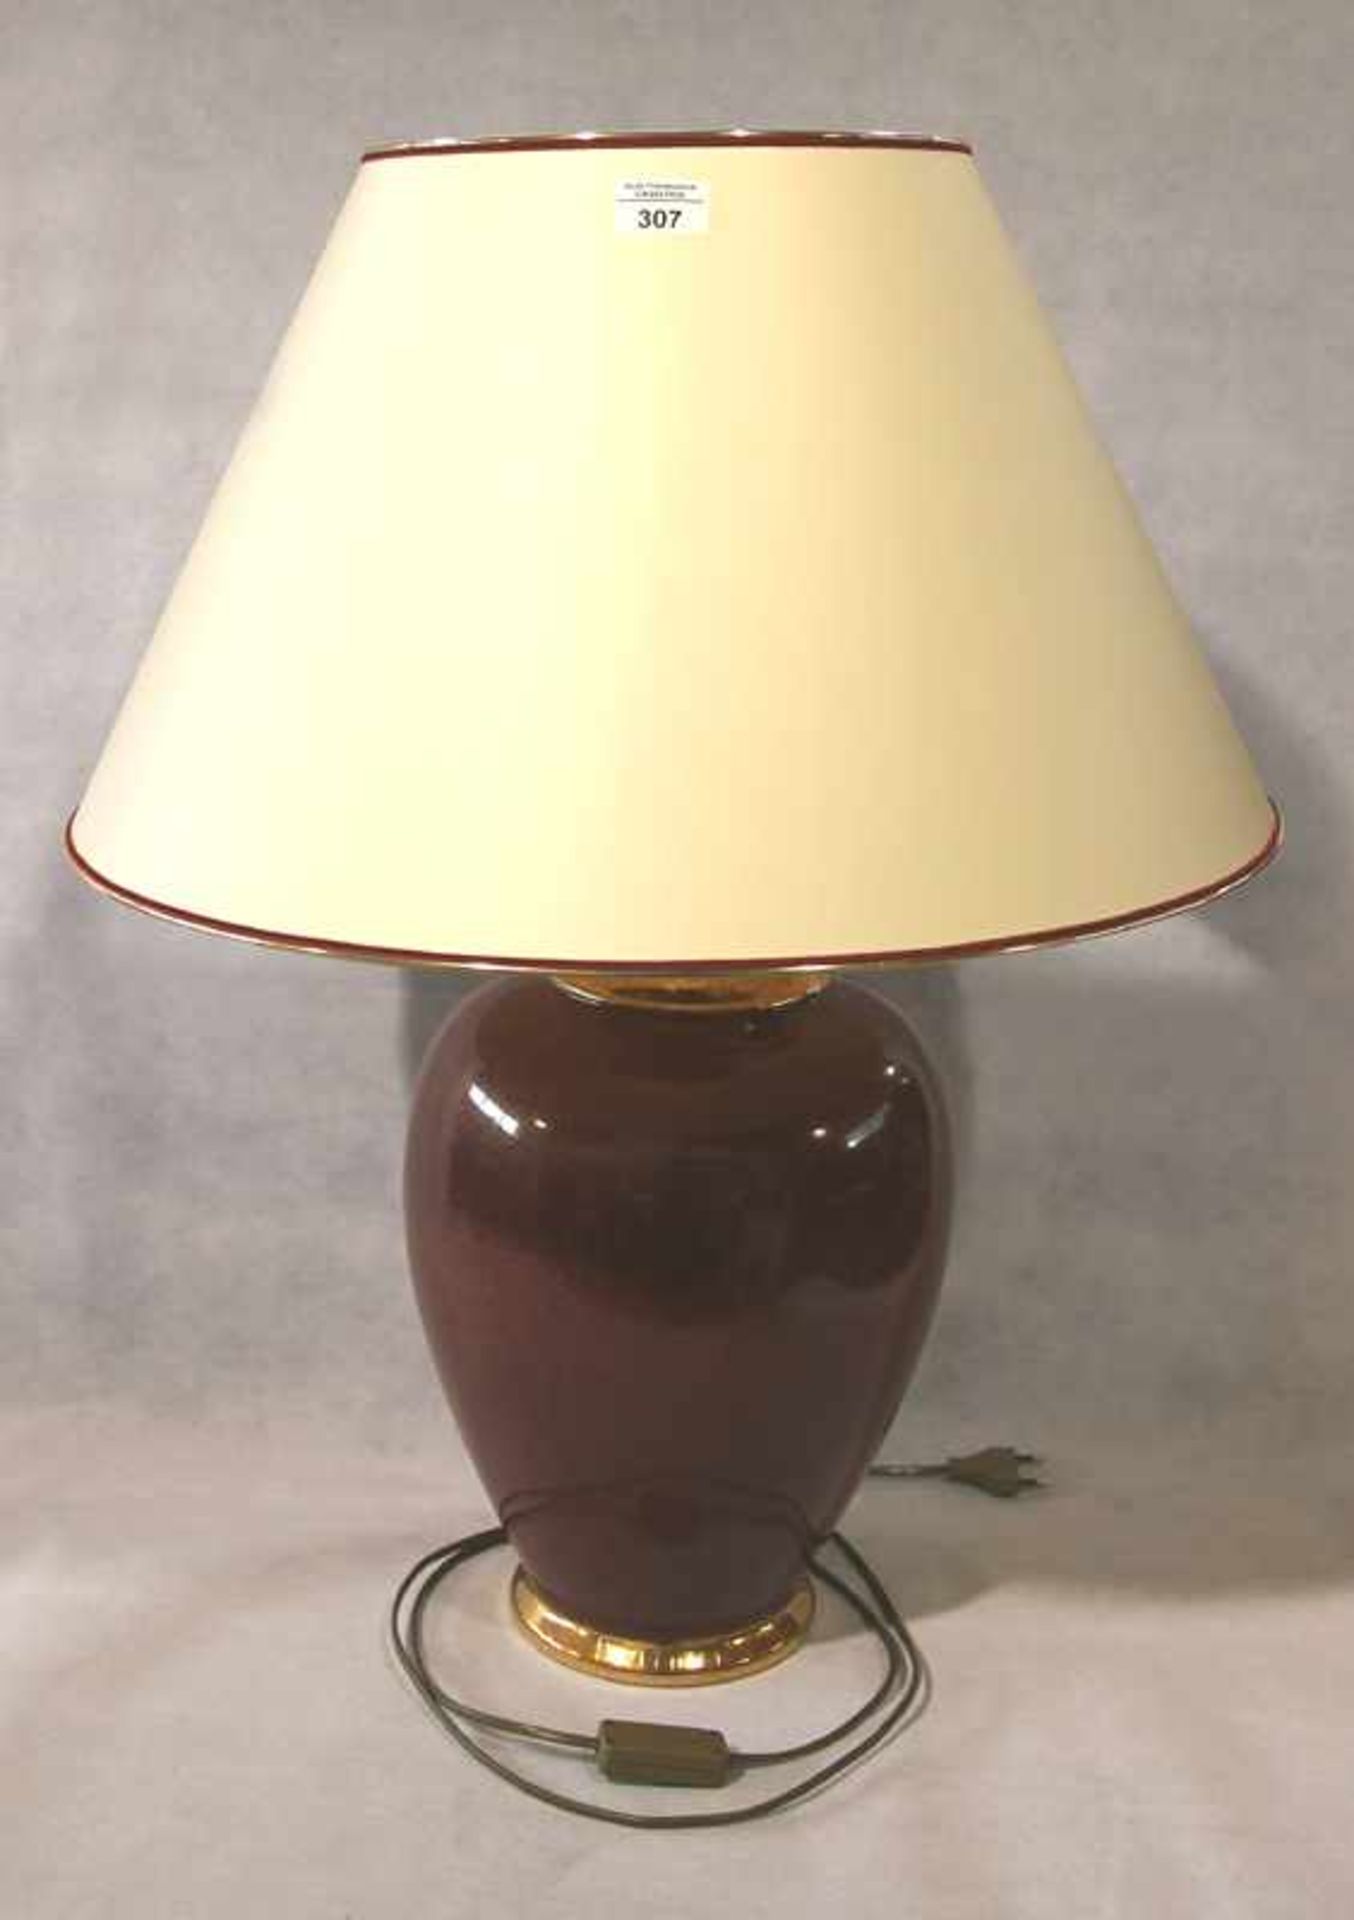 Paar Tischlampen mit Keramikfuß, dunkelrot/gold und beigen Schirm, H 74 cm, D 57 cm,